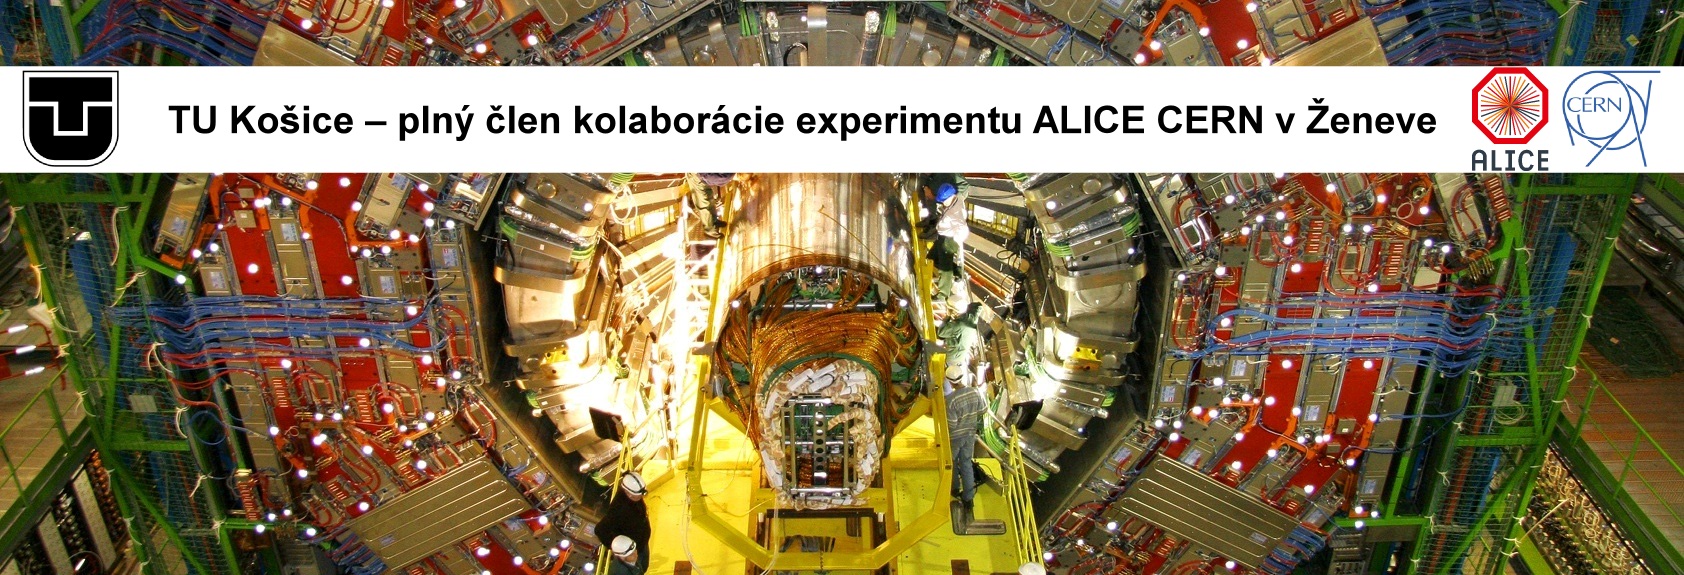 TU Košice – plný člen kolaborácie experimentu ALICE CERN v Ženeve